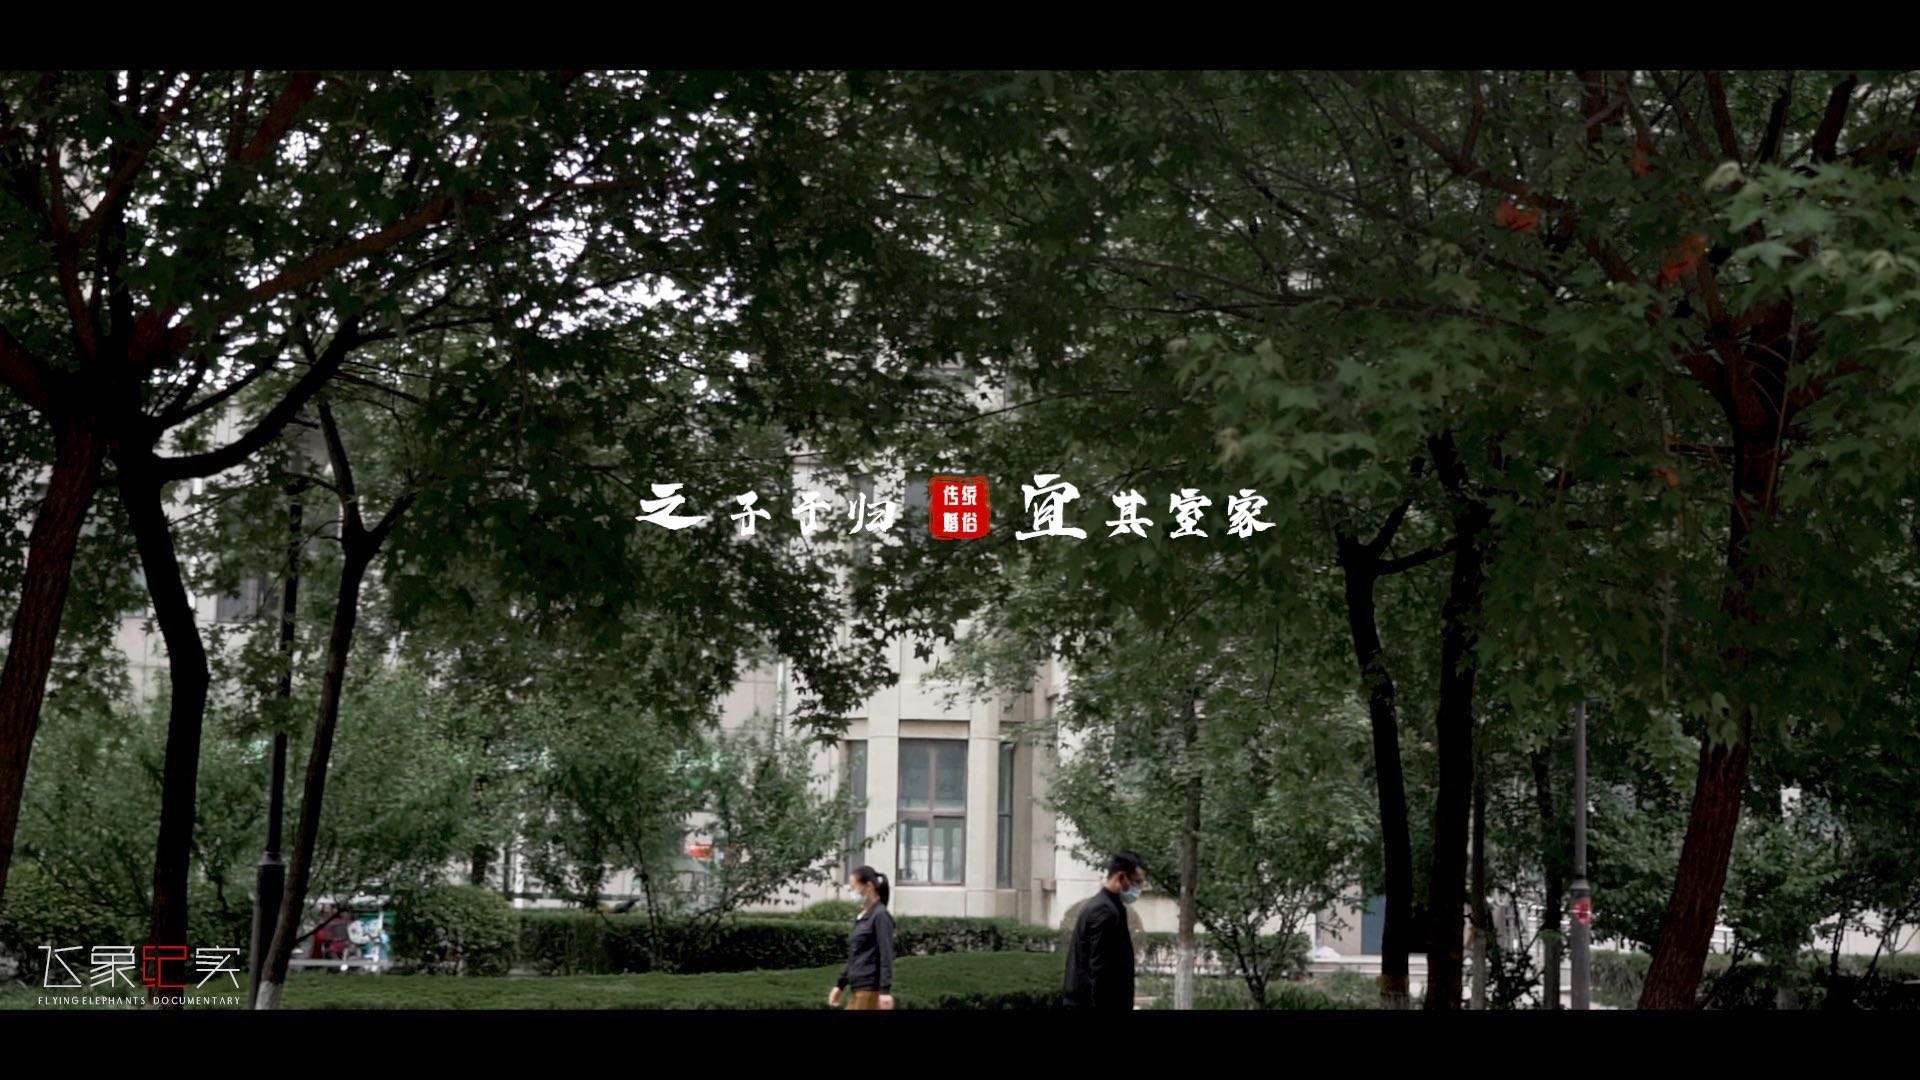 艾薇婚礼丨飞象电影丨当日席前快剪「X+M」May.11th.2022丨农圣大酒店